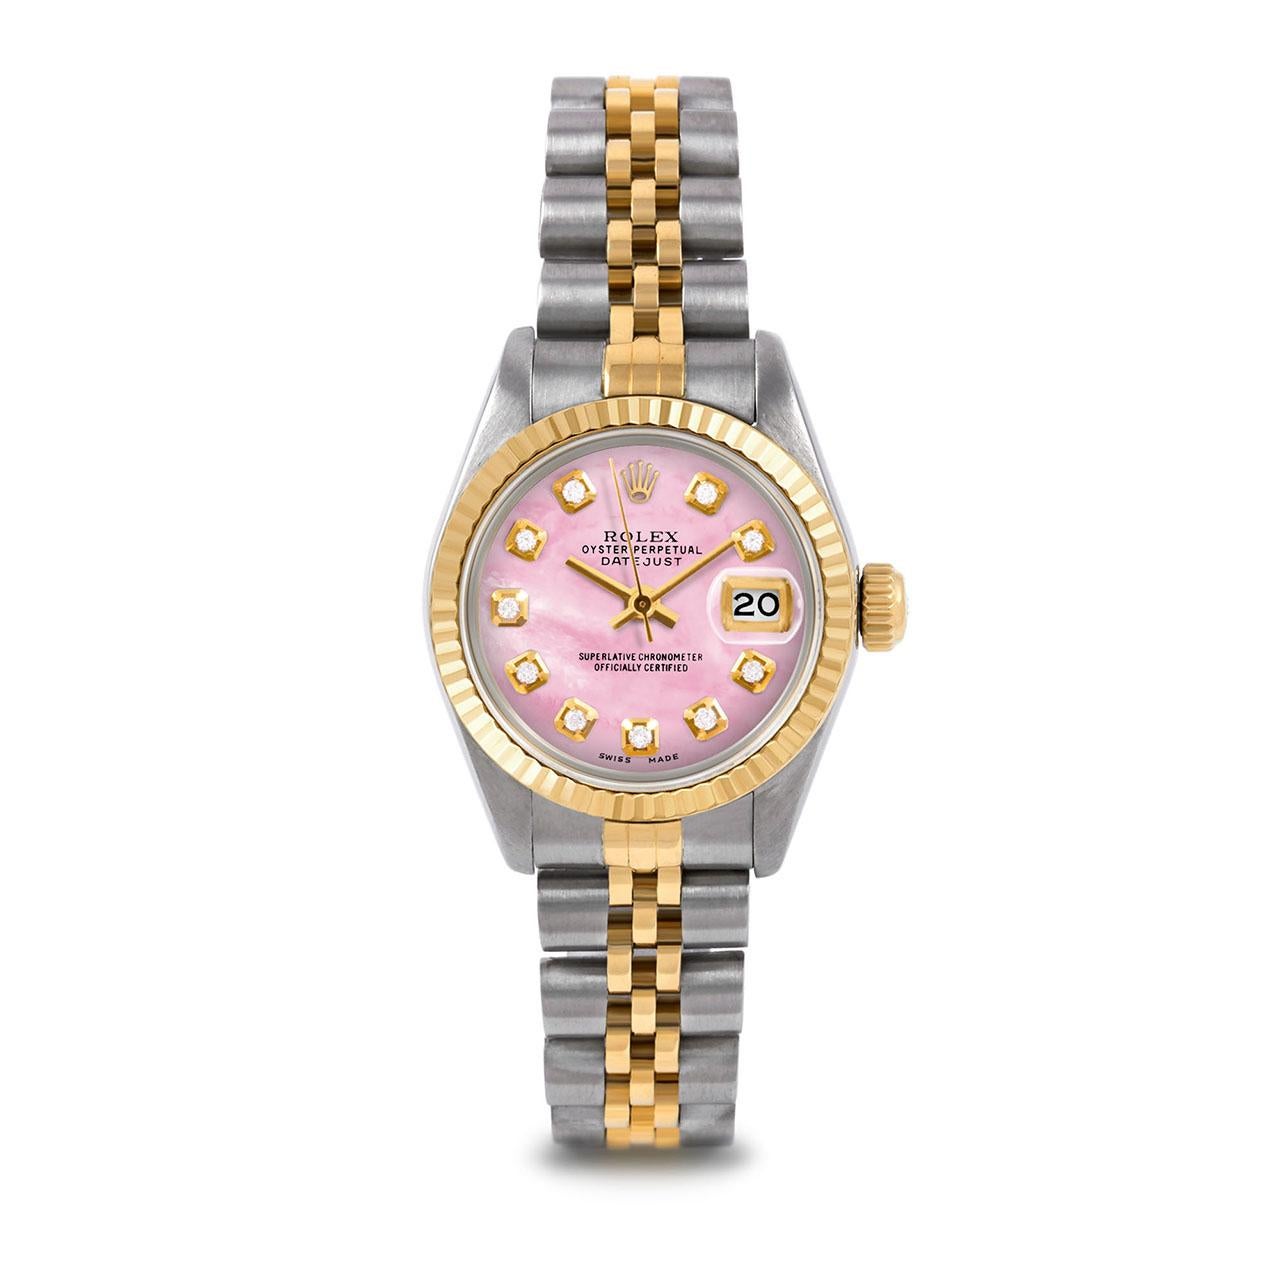 Montre Rolex 6917 26mm Two Tone Datejust pour femme, cadran personnalisé en nacre rose avec diamants et lunette cannelée sur bracelet jubilé en or jaune 14K et acier inoxydable.   

SKU 6917-TT-PMOP-DIA-AM-FLT-JBL


Marque/Modèle :        Rolex